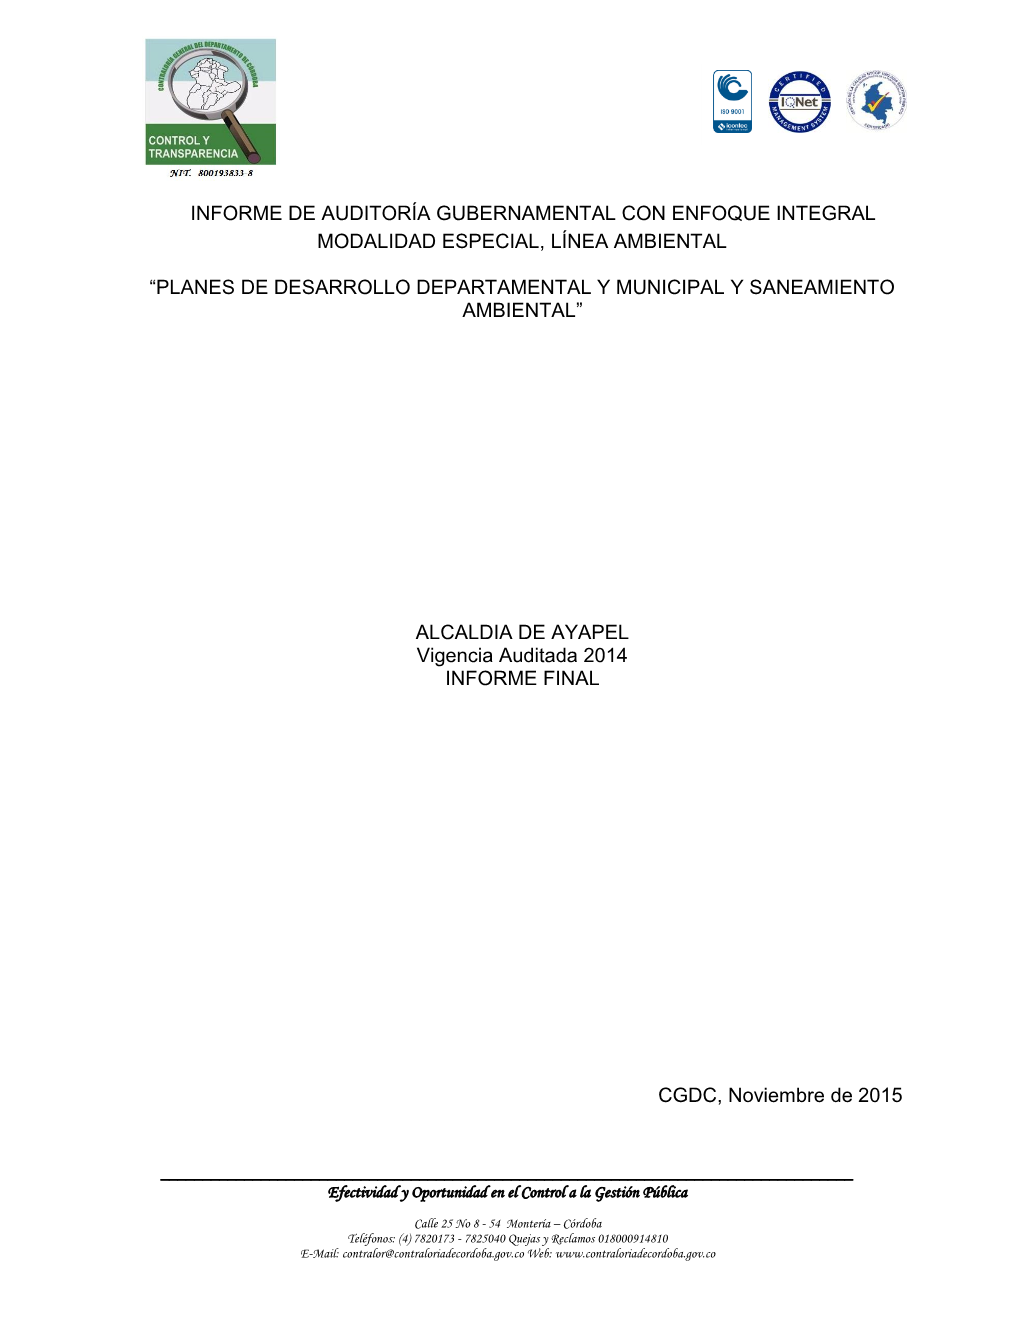 Informe De Auditoría Gubernamental Con Enfoque Integral Modalidad Especial, Línea Ambiental